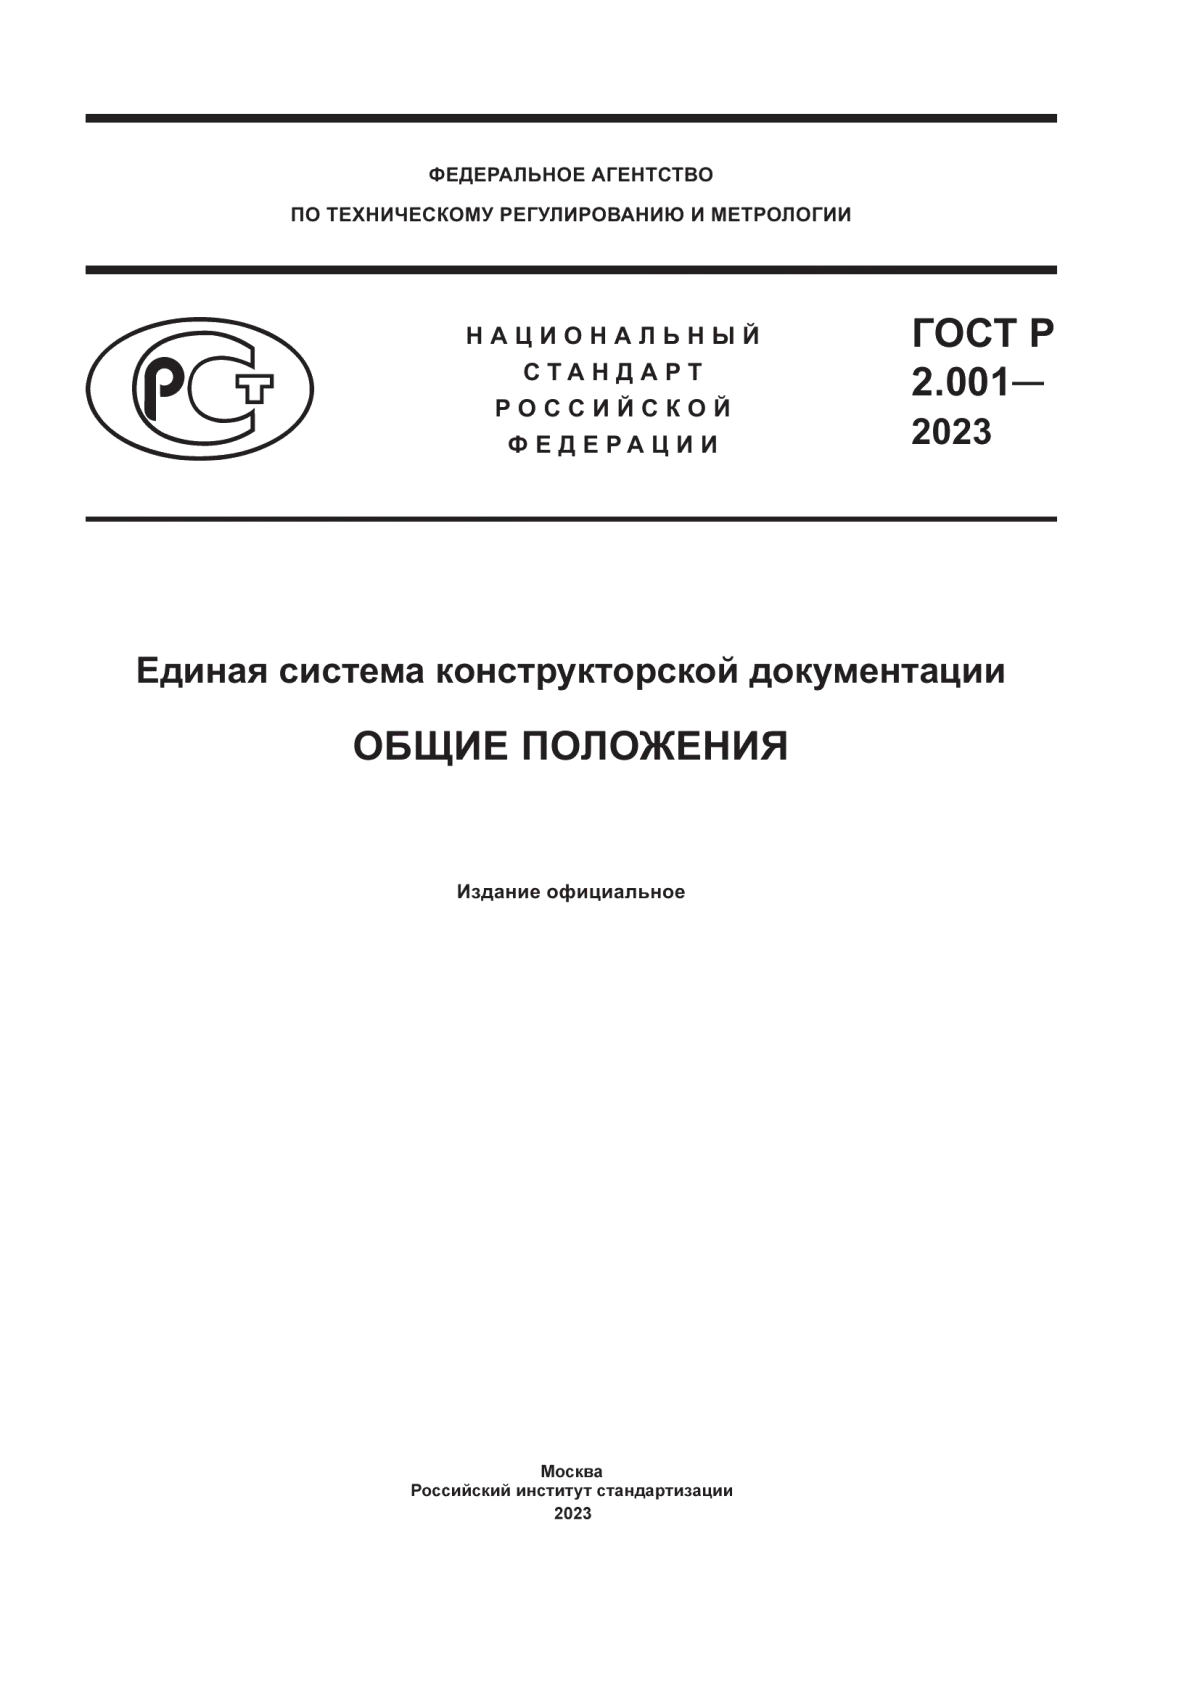 ГОСТ Р 2.001-2023 Единая система конструкторской документации. Общие положения